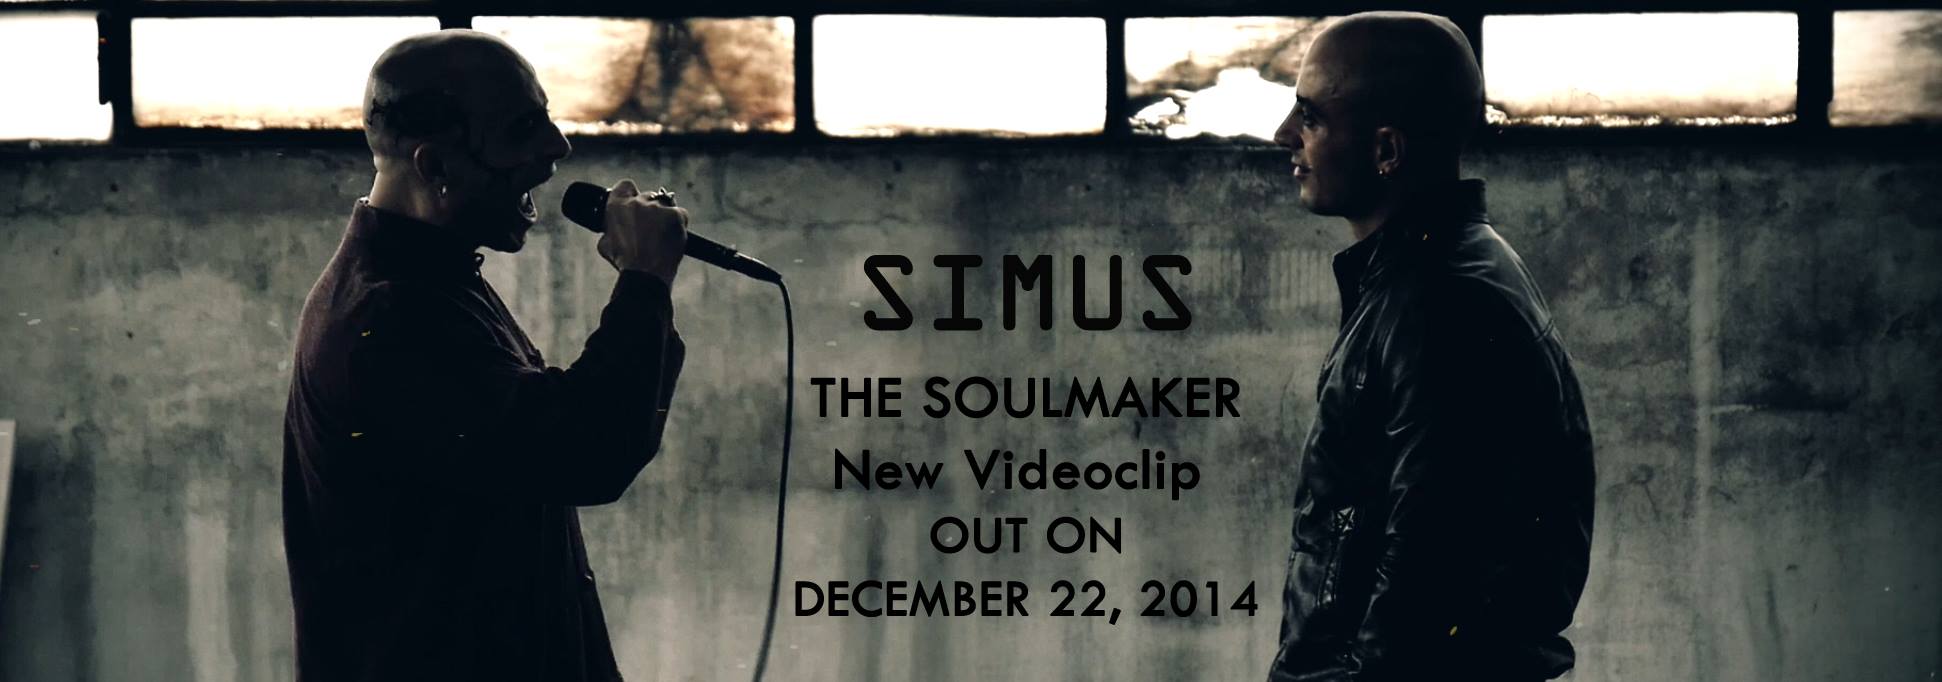 simus soulmaker